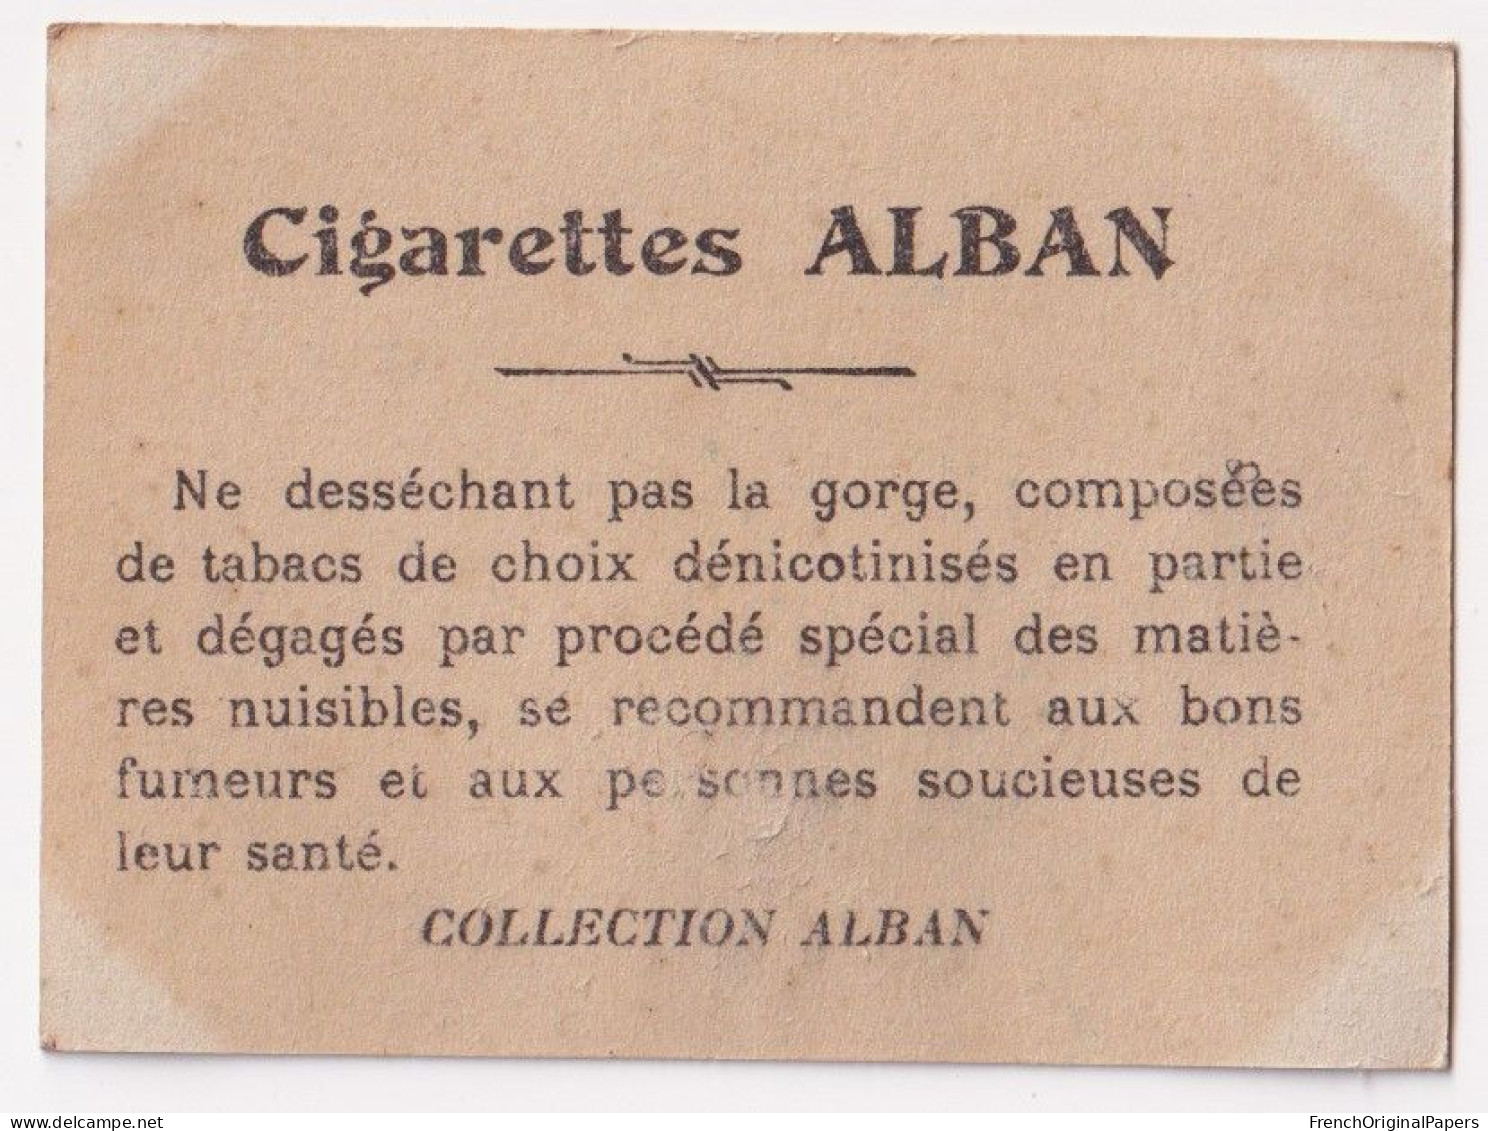 Cavaliéri - Cigarettes L. Alban 1910 Photo Femme Sexy Pin-up Vintage Artiste Cabaret Paris Bône Danse Danseuse A62-19 - Autres Marques